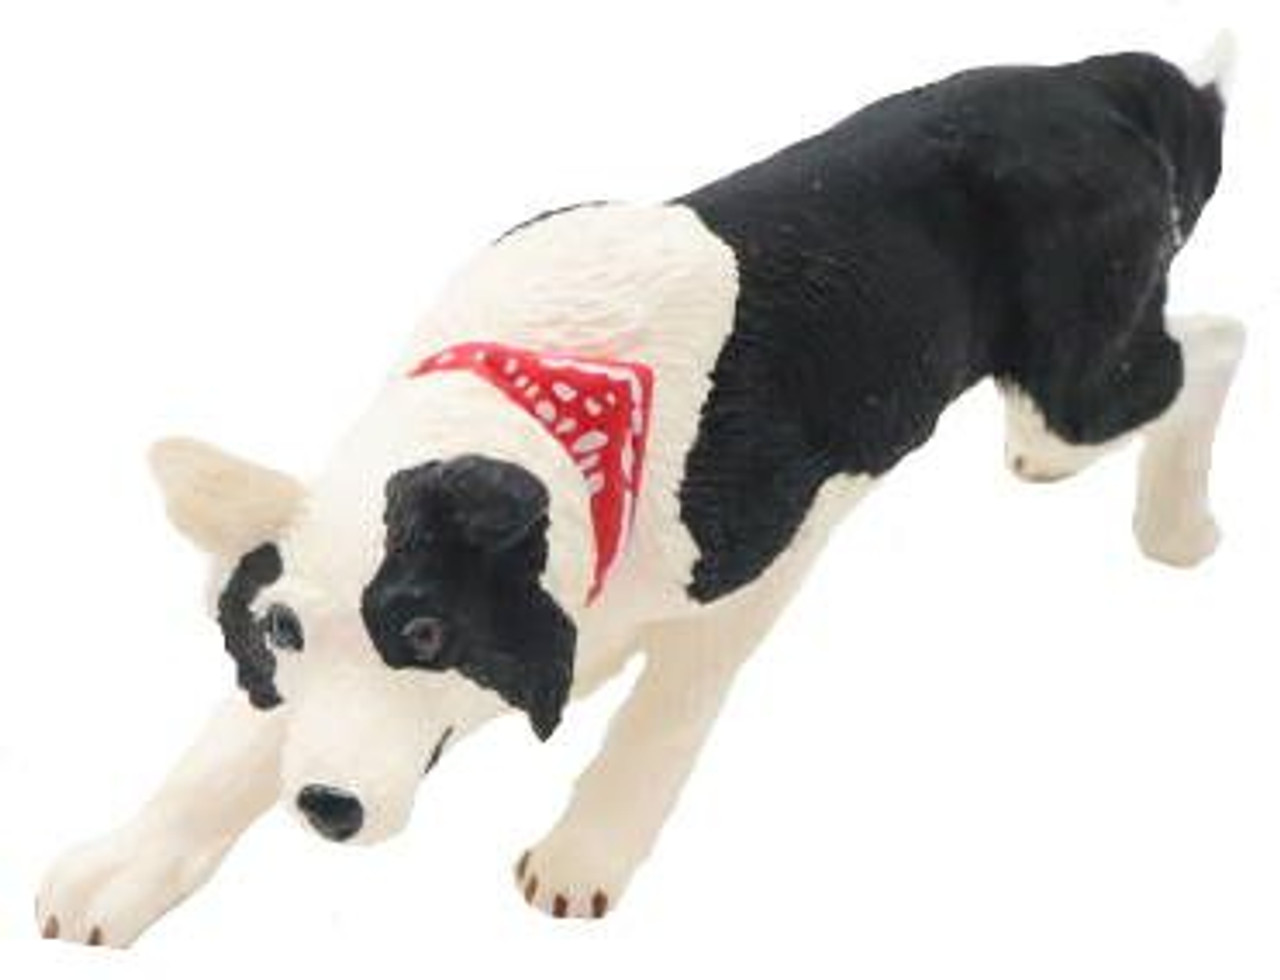 Figurine chien Colley - Safari Ltd® 239329